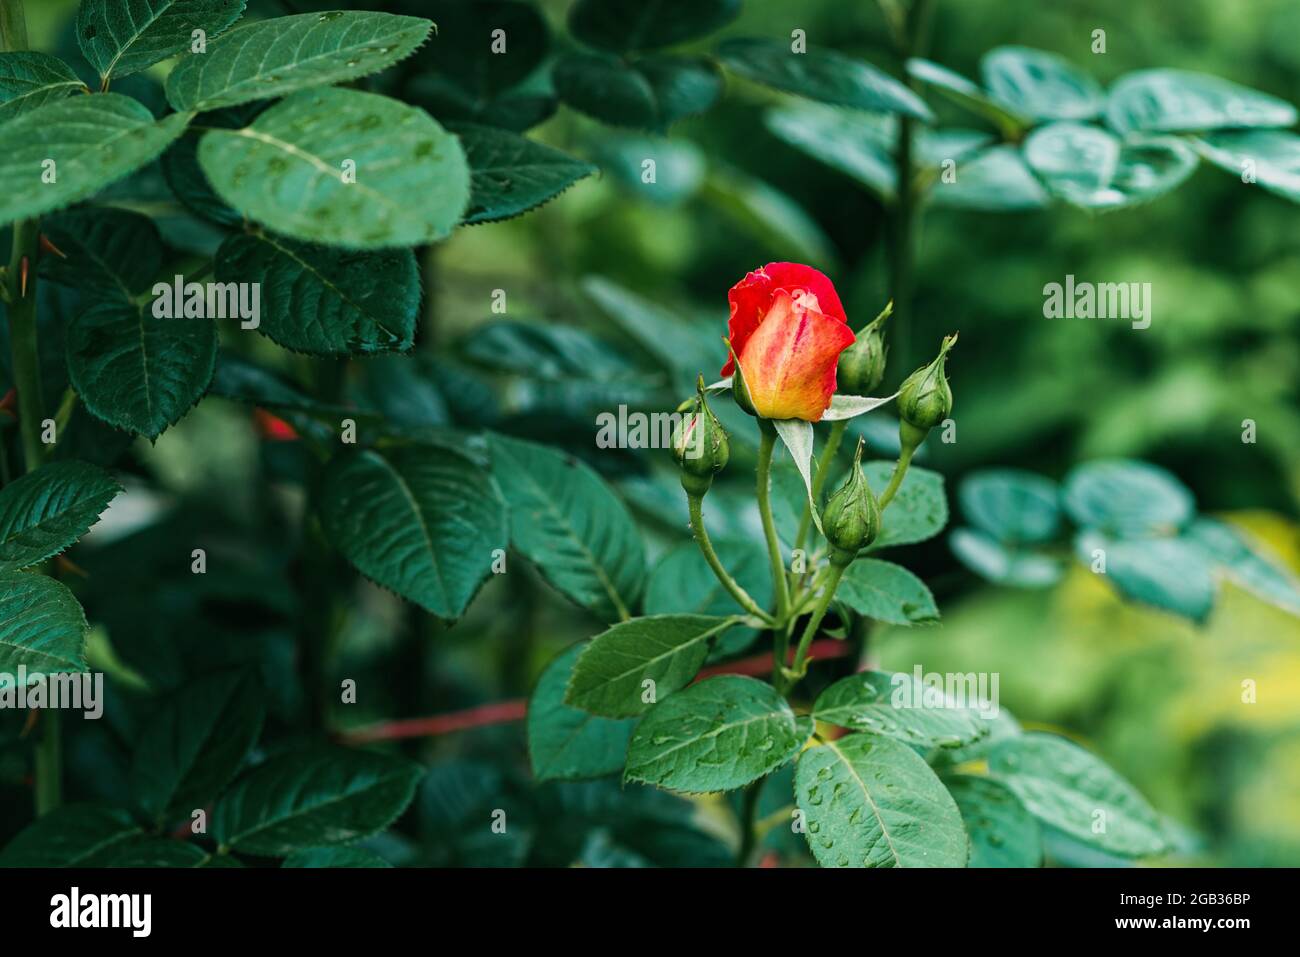 La rose chinoise, connue sous le nom de rose Bengale, ou rose framboise .Rosa chinensis, est une belle fleur orange et jaune que l'on trouve dans le jardin. Souple Banque D'Images